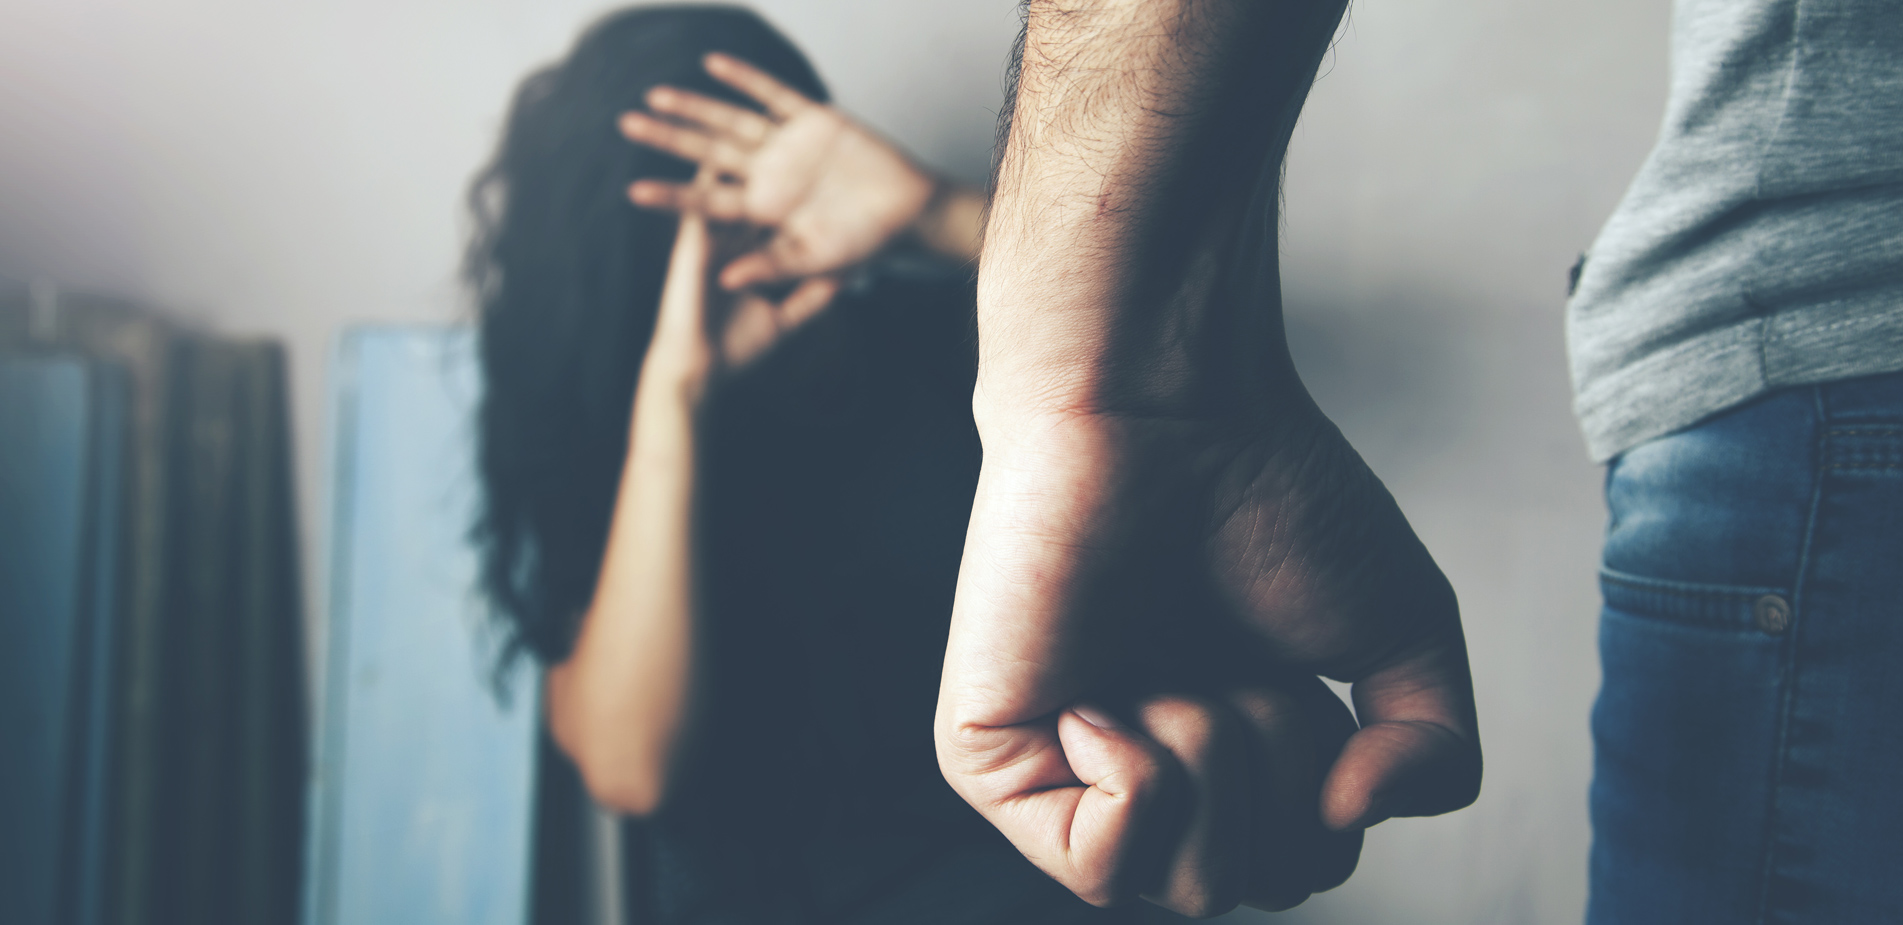 Θεσσαλονίκη: Νέα καταγγελία για ξυλοδαρμό 25χρονης από τον σύντροφό της